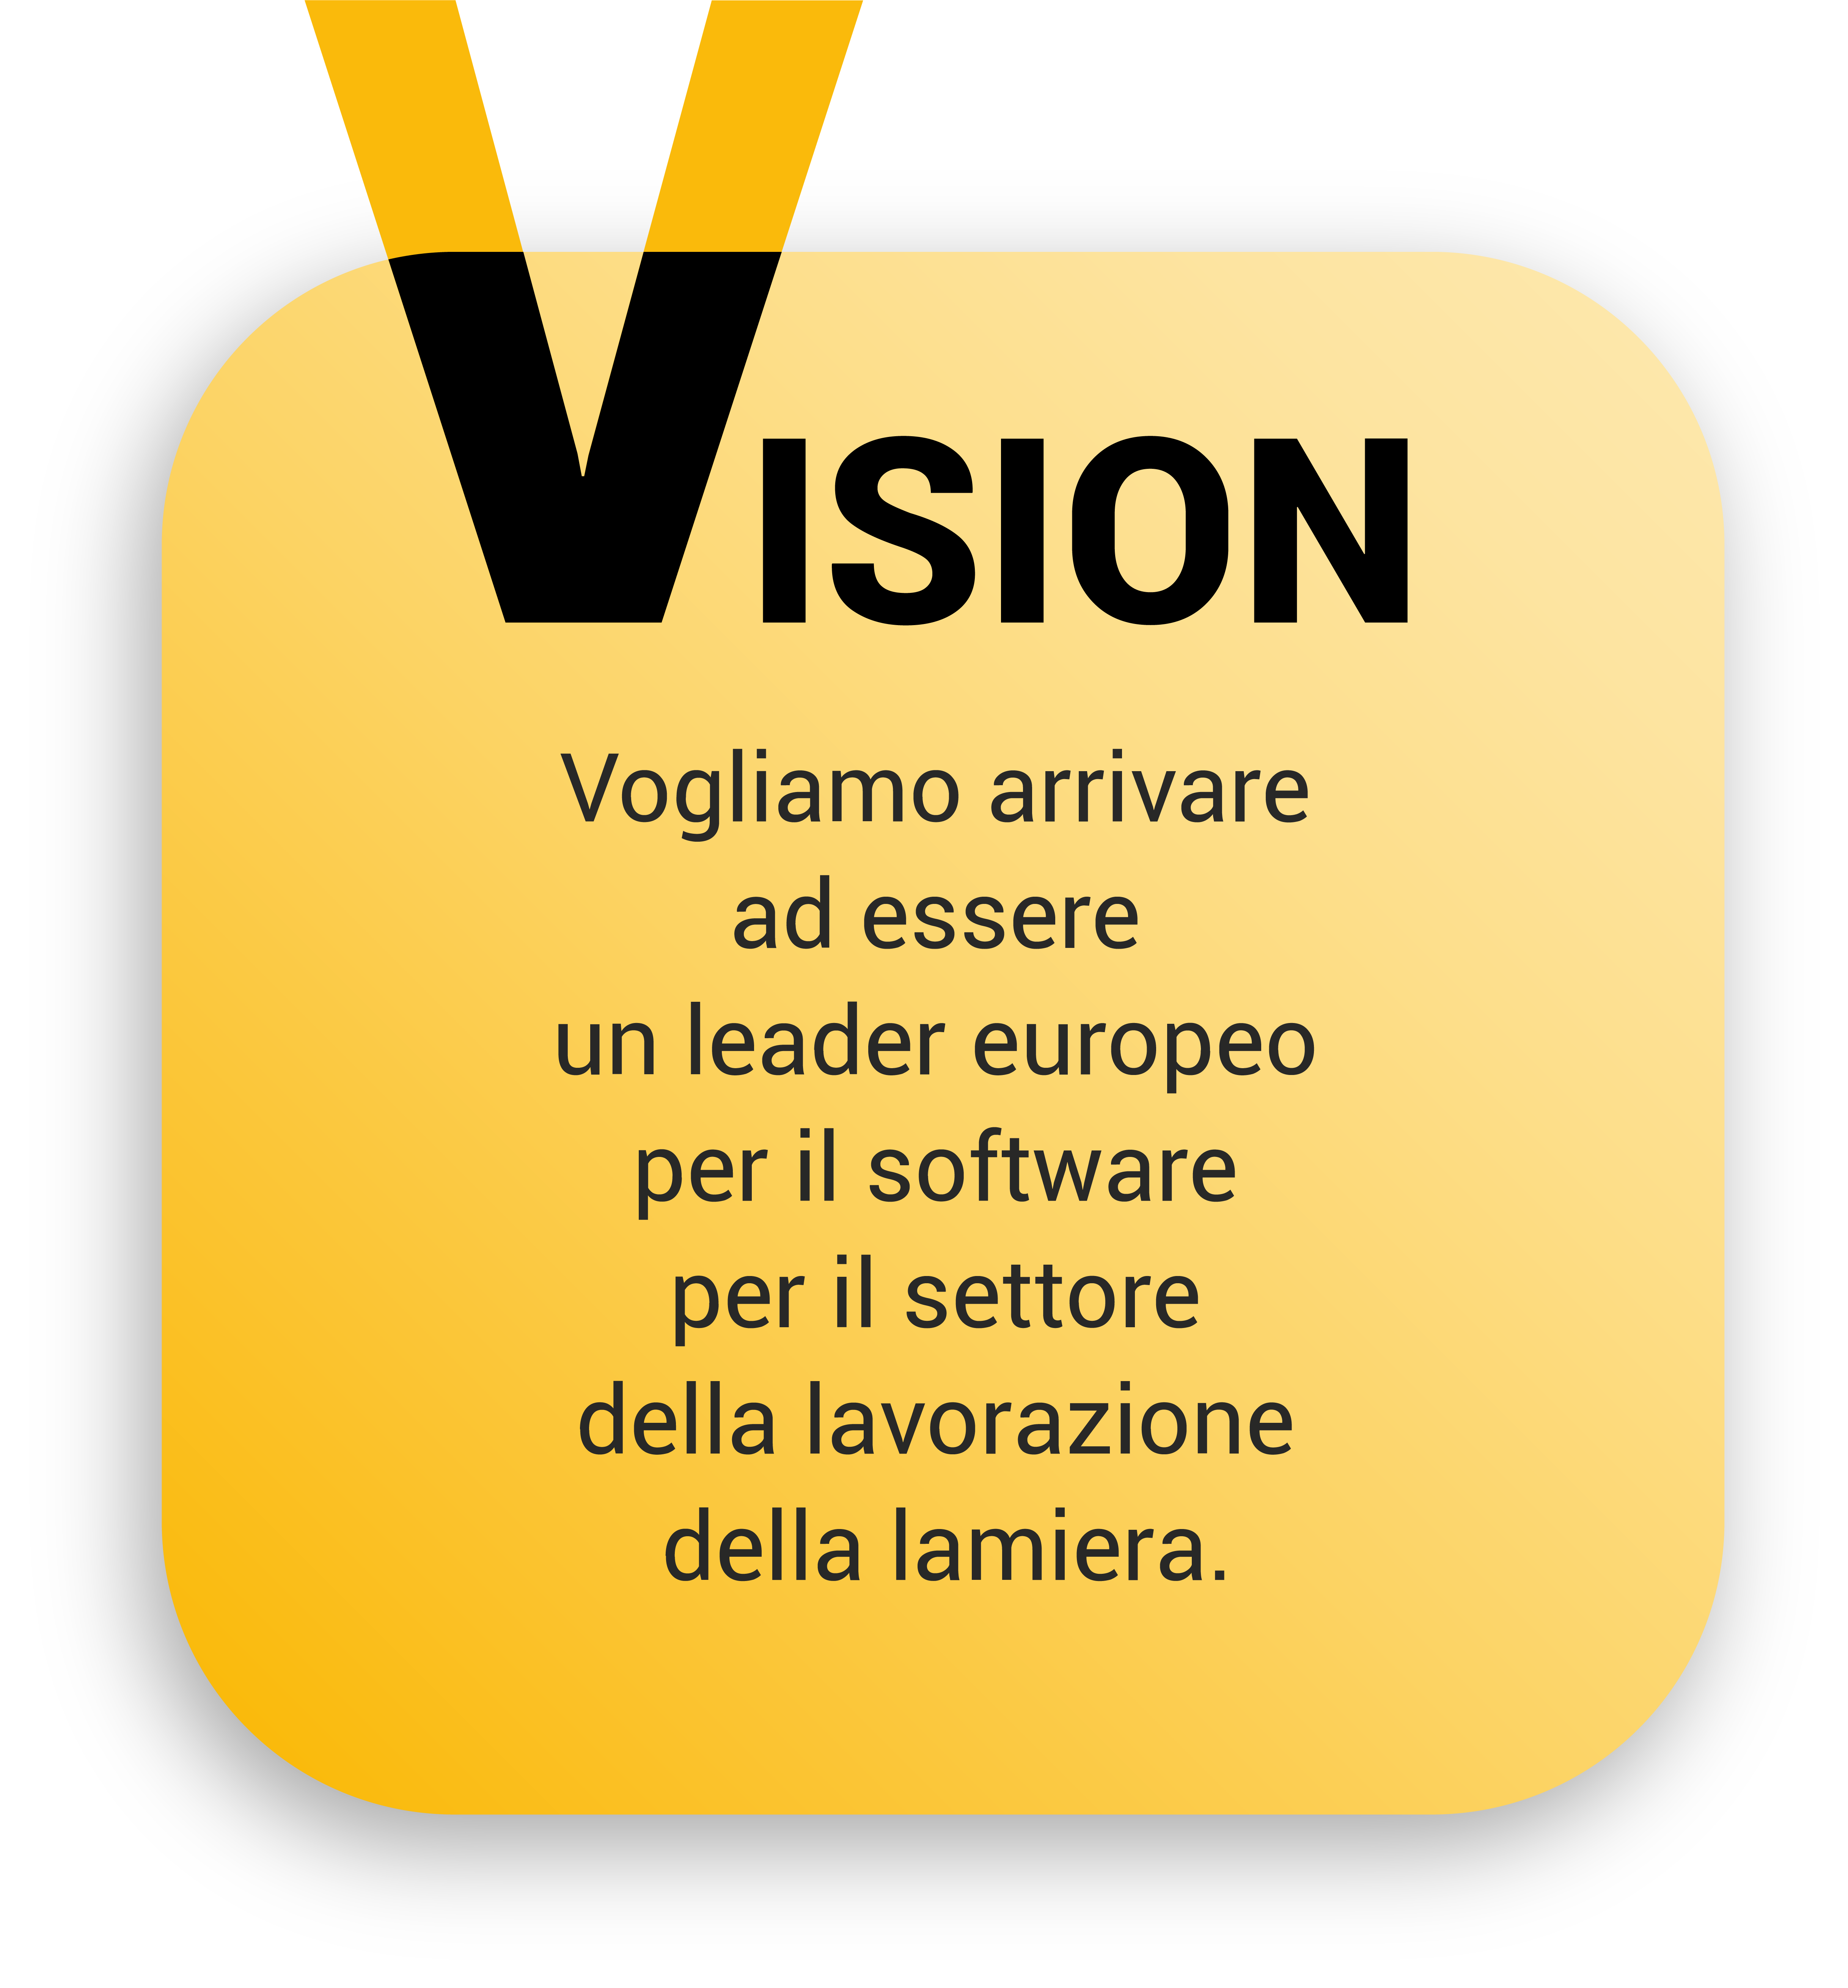 valori-mission-vision_tavola-disegno-1-copia